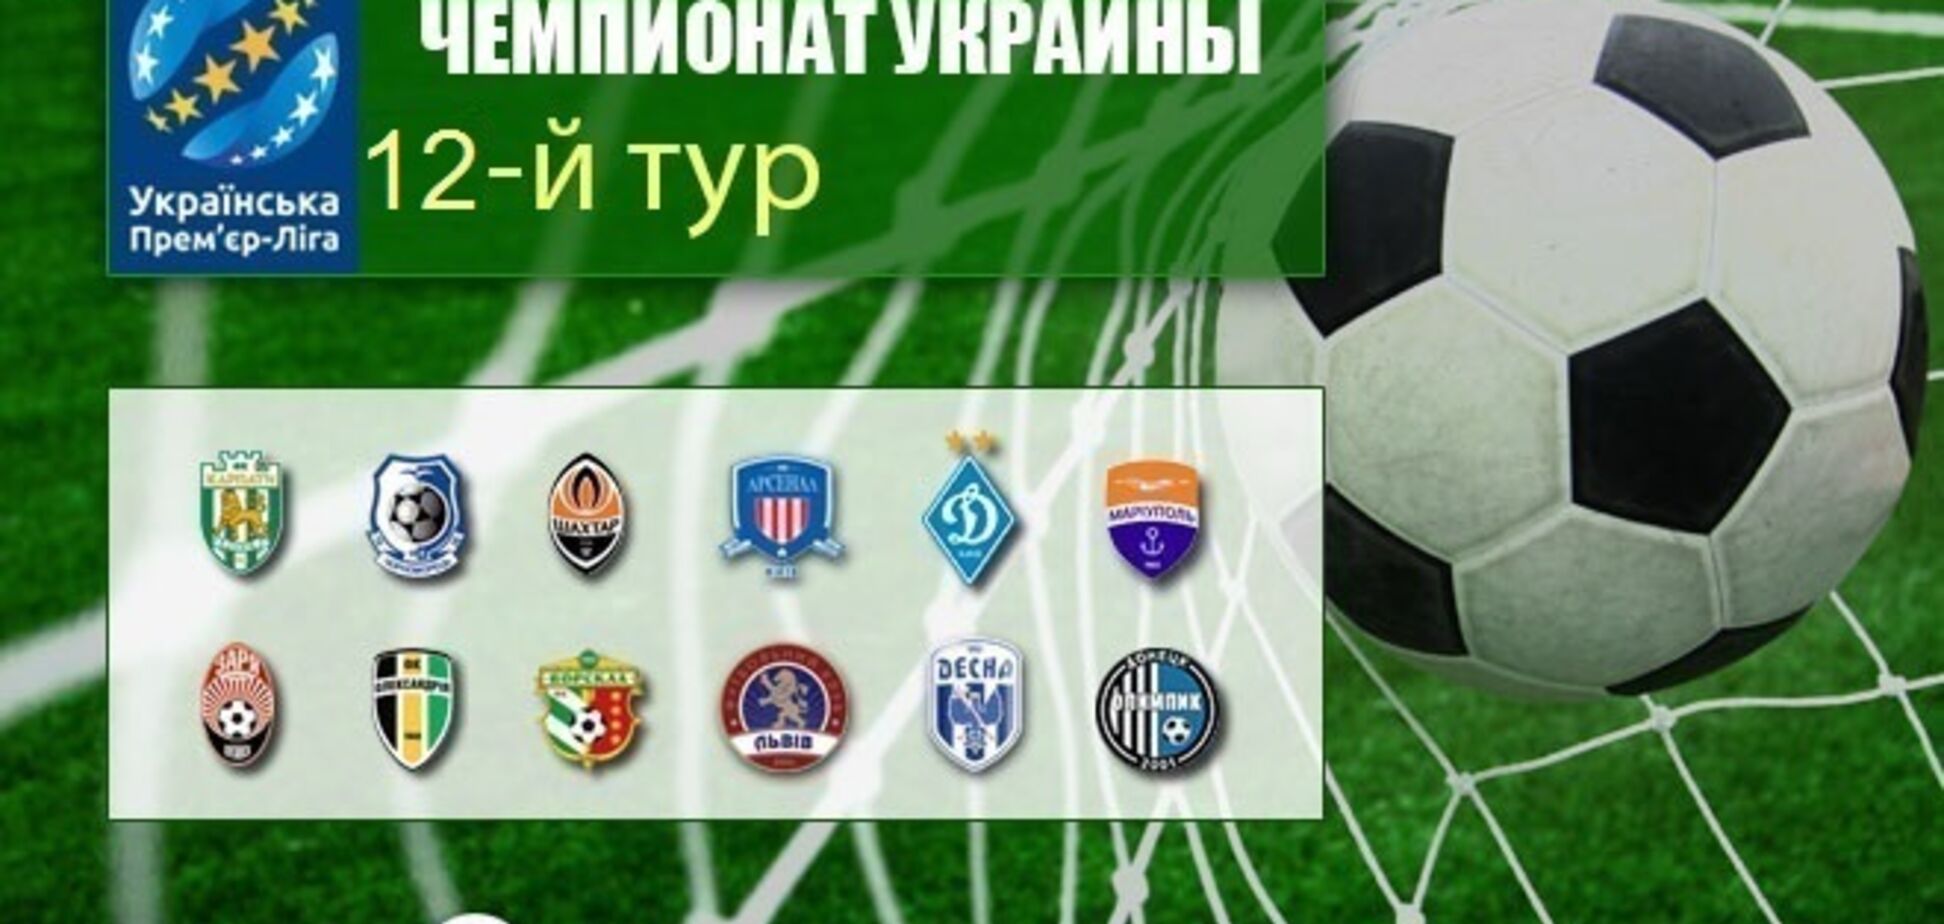 12-й тур чемпионата Украины по футболу: результаты и обзоры